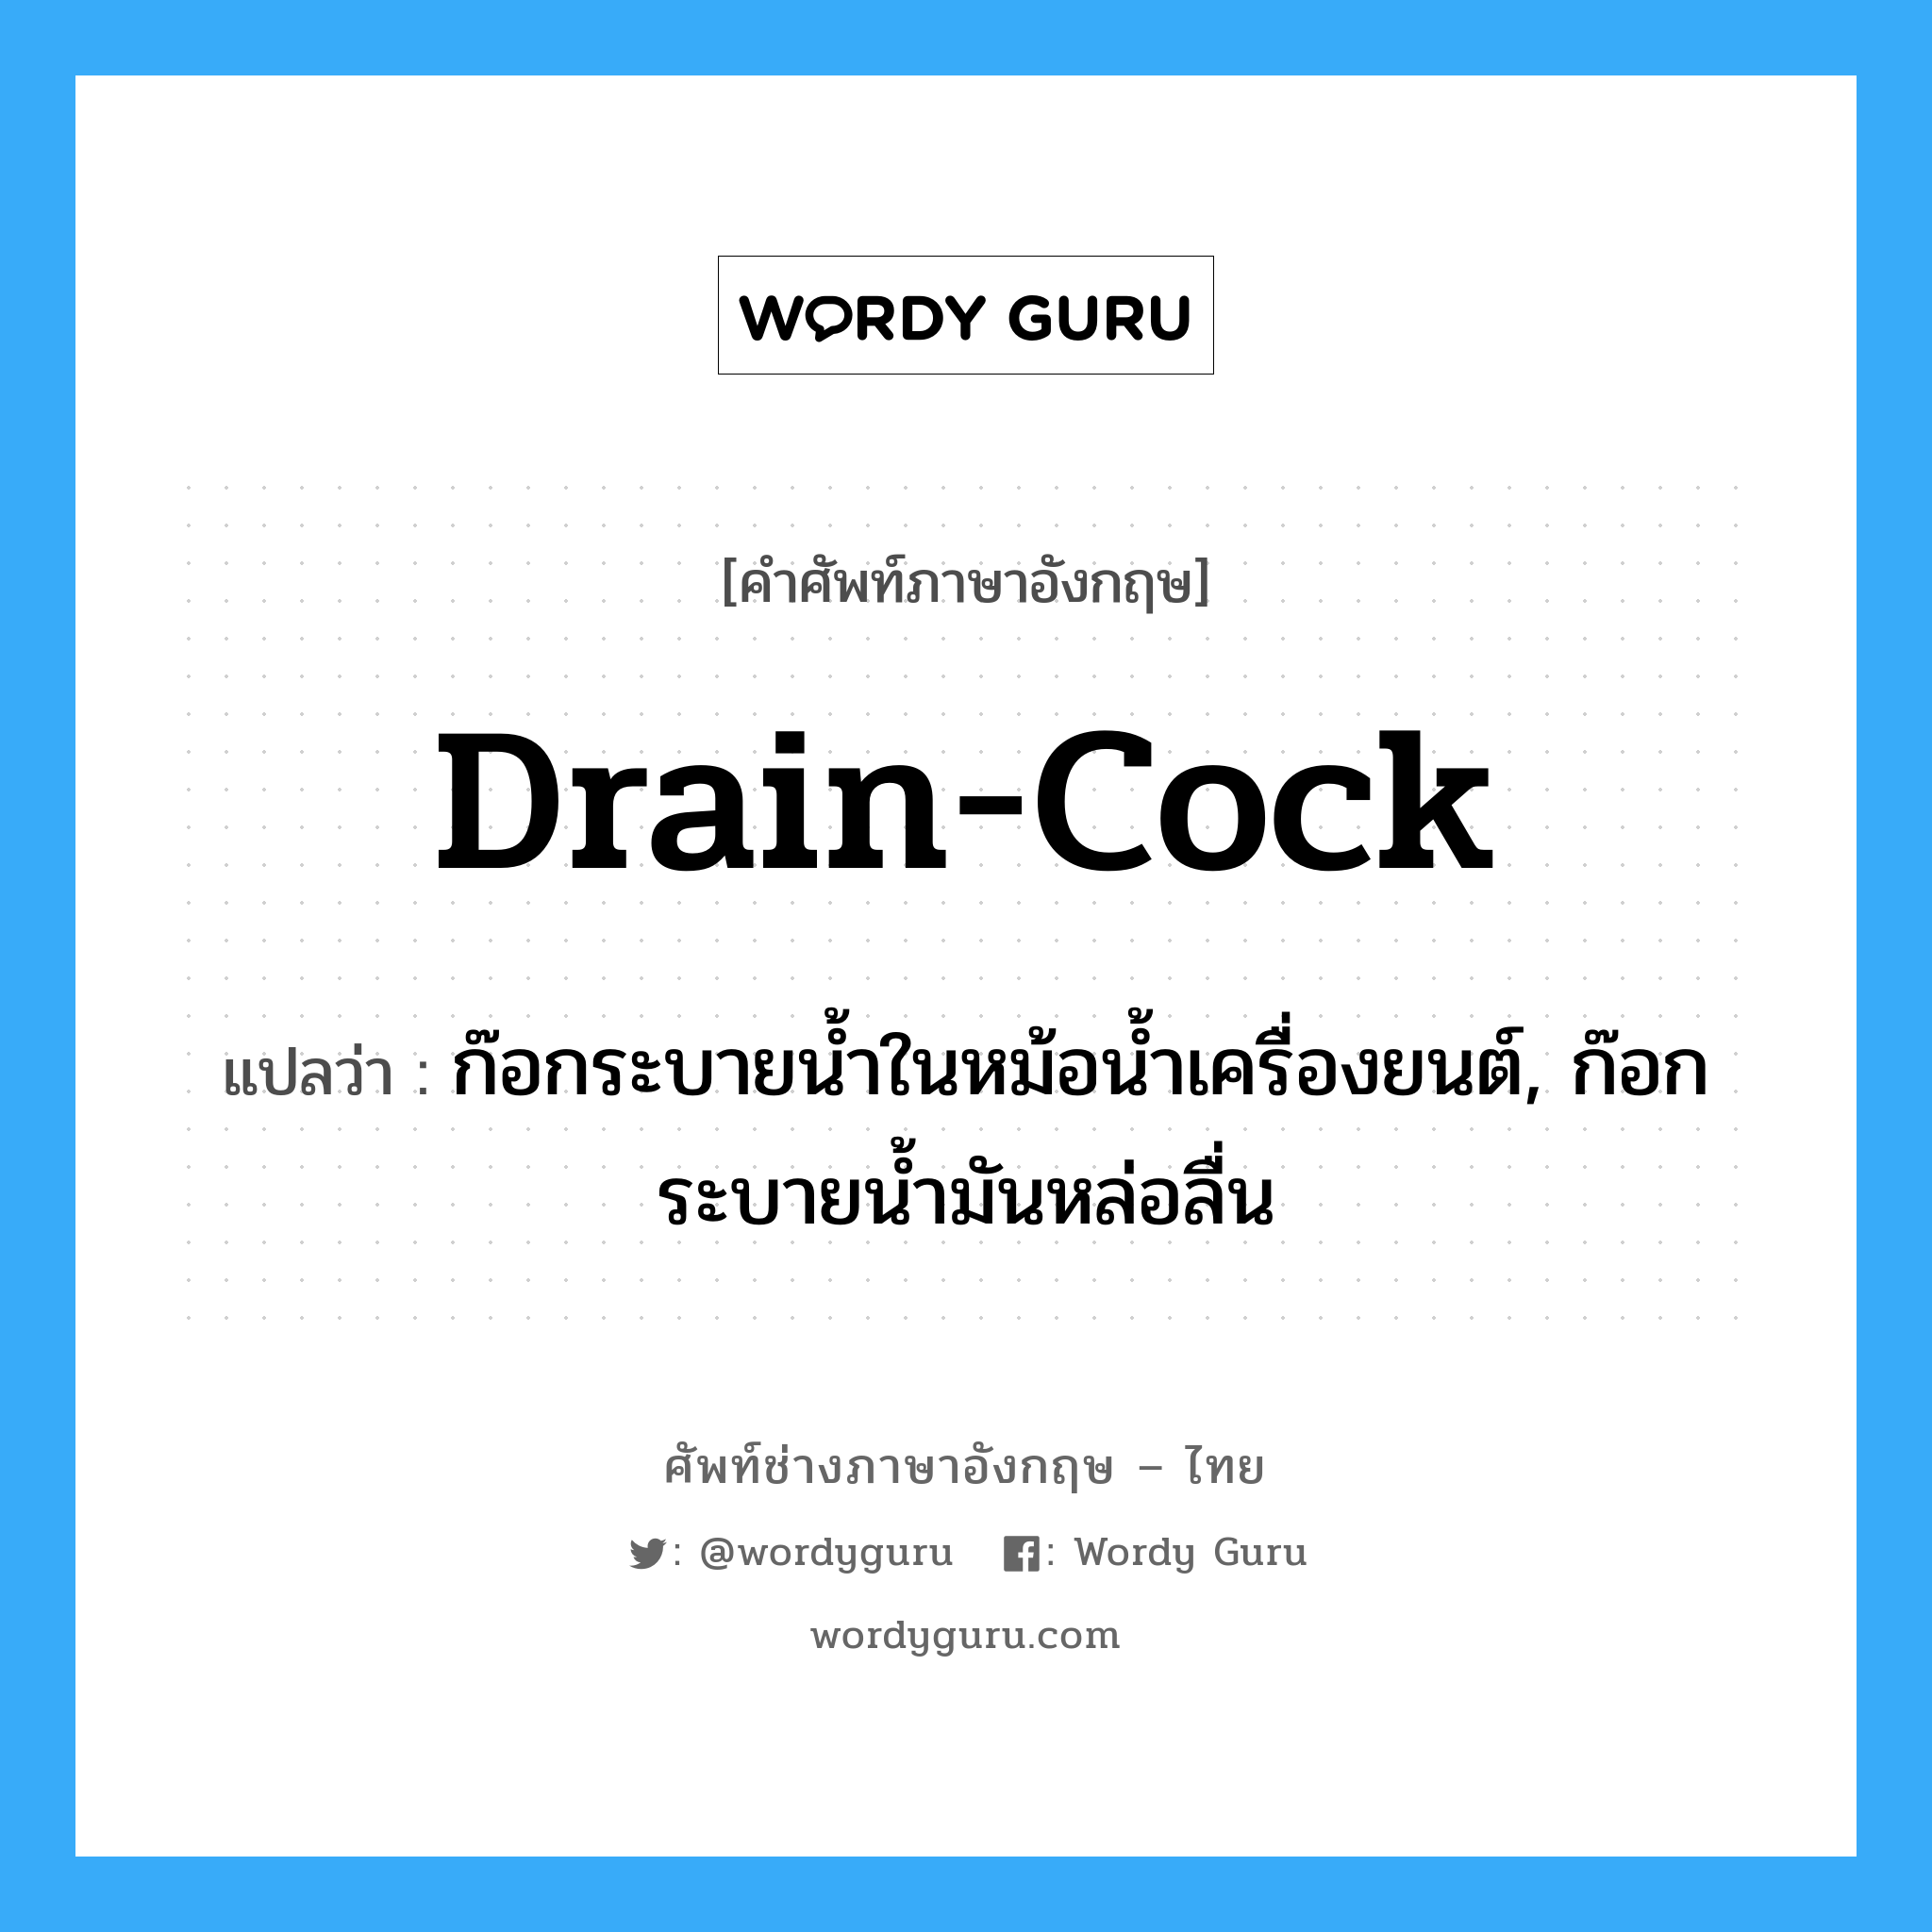 drain cock แปลว่า?, คำศัพท์ช่างภาษาอังกฤษ - ไทย drain-cock คำศัพท์ภาษาอังกฤษ drain-cock แปลว่า ก๊อกระบายน้ำในหม้อน้ำเครื่องยนต์, ก๊อกระบายน้ำมันหล่อลื่น